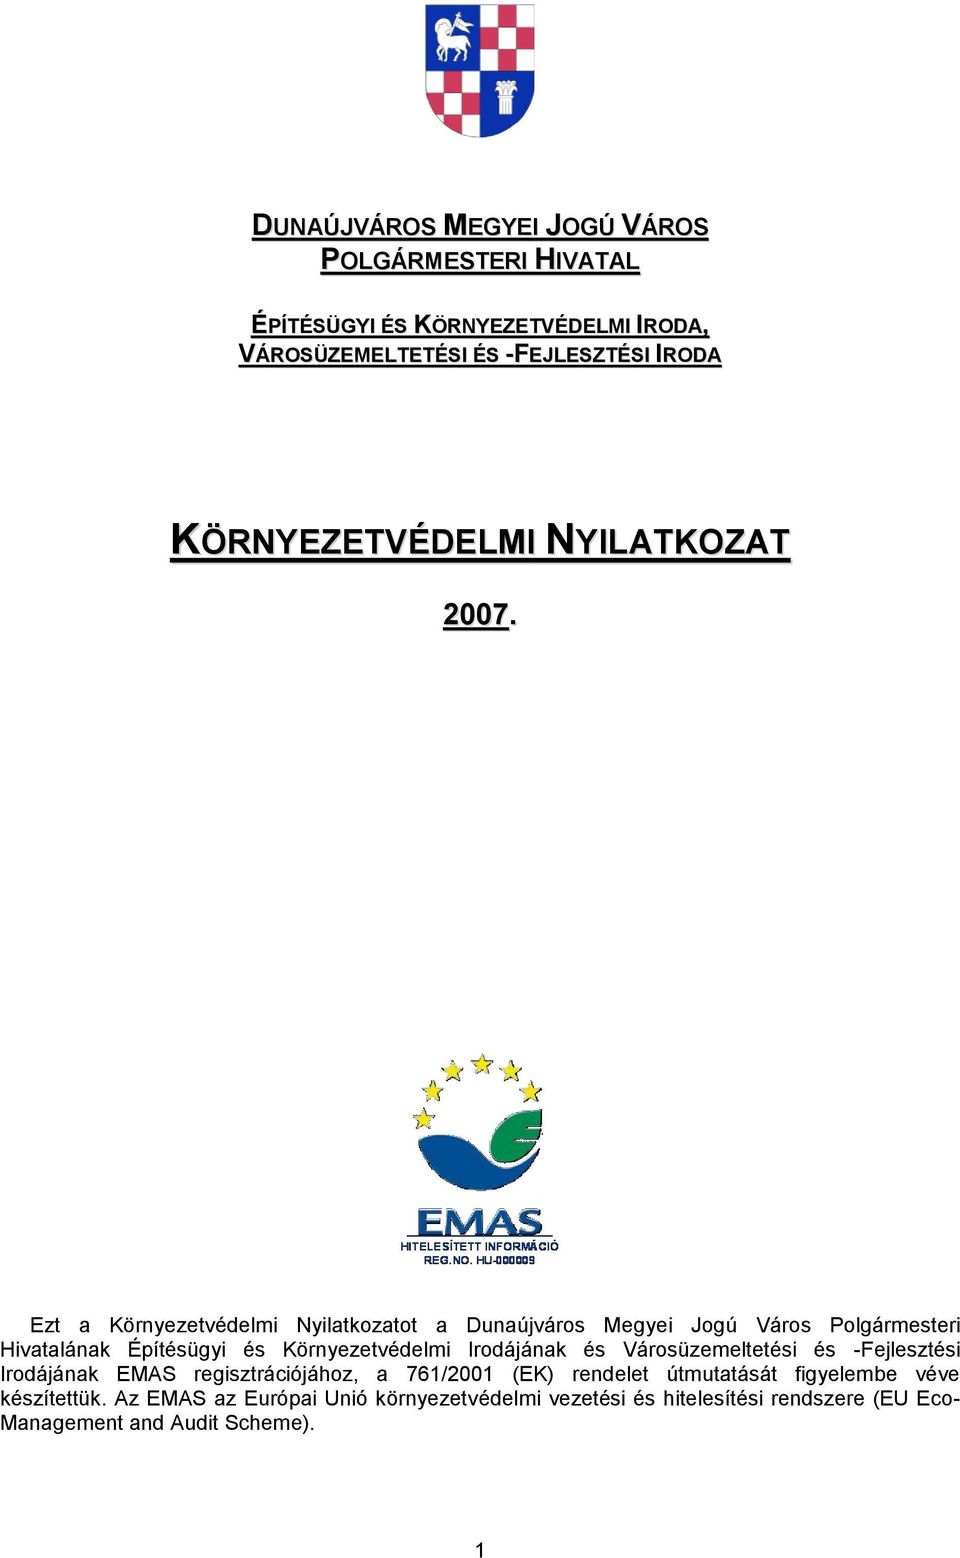 Ezt a Környezetvédelmi Nyilatkozatot a Dunaújváros Megyei Jogú Város Polgármesteri Hivatalának Építésügyi és Környezetvédelmi Irodájának